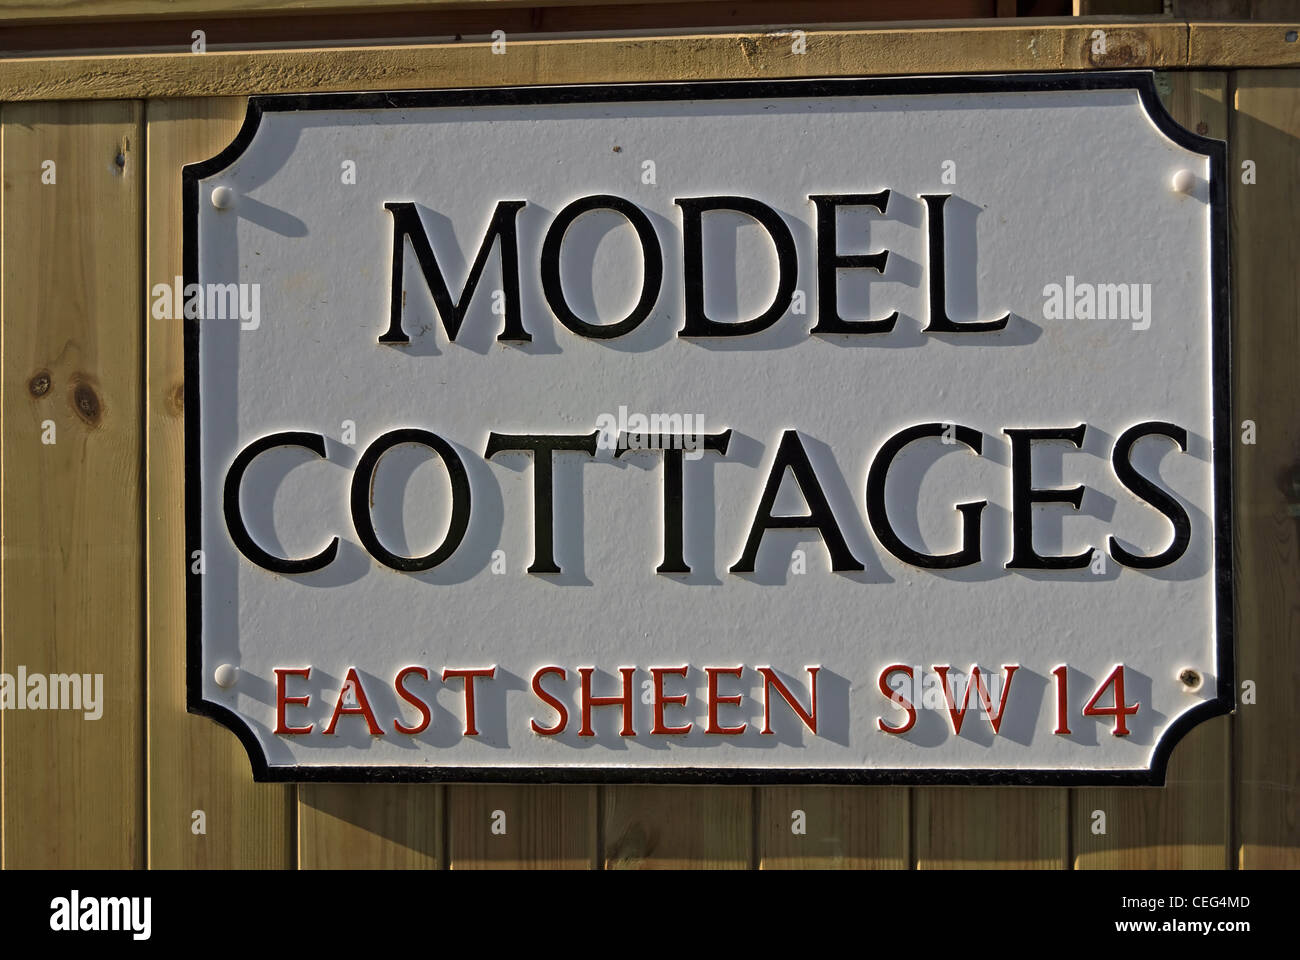 Signe de nom de rue pour le modèle des chalets, une rue d'East Sheen, le sud-ouest de Londres, Angleterre Banque D'Images